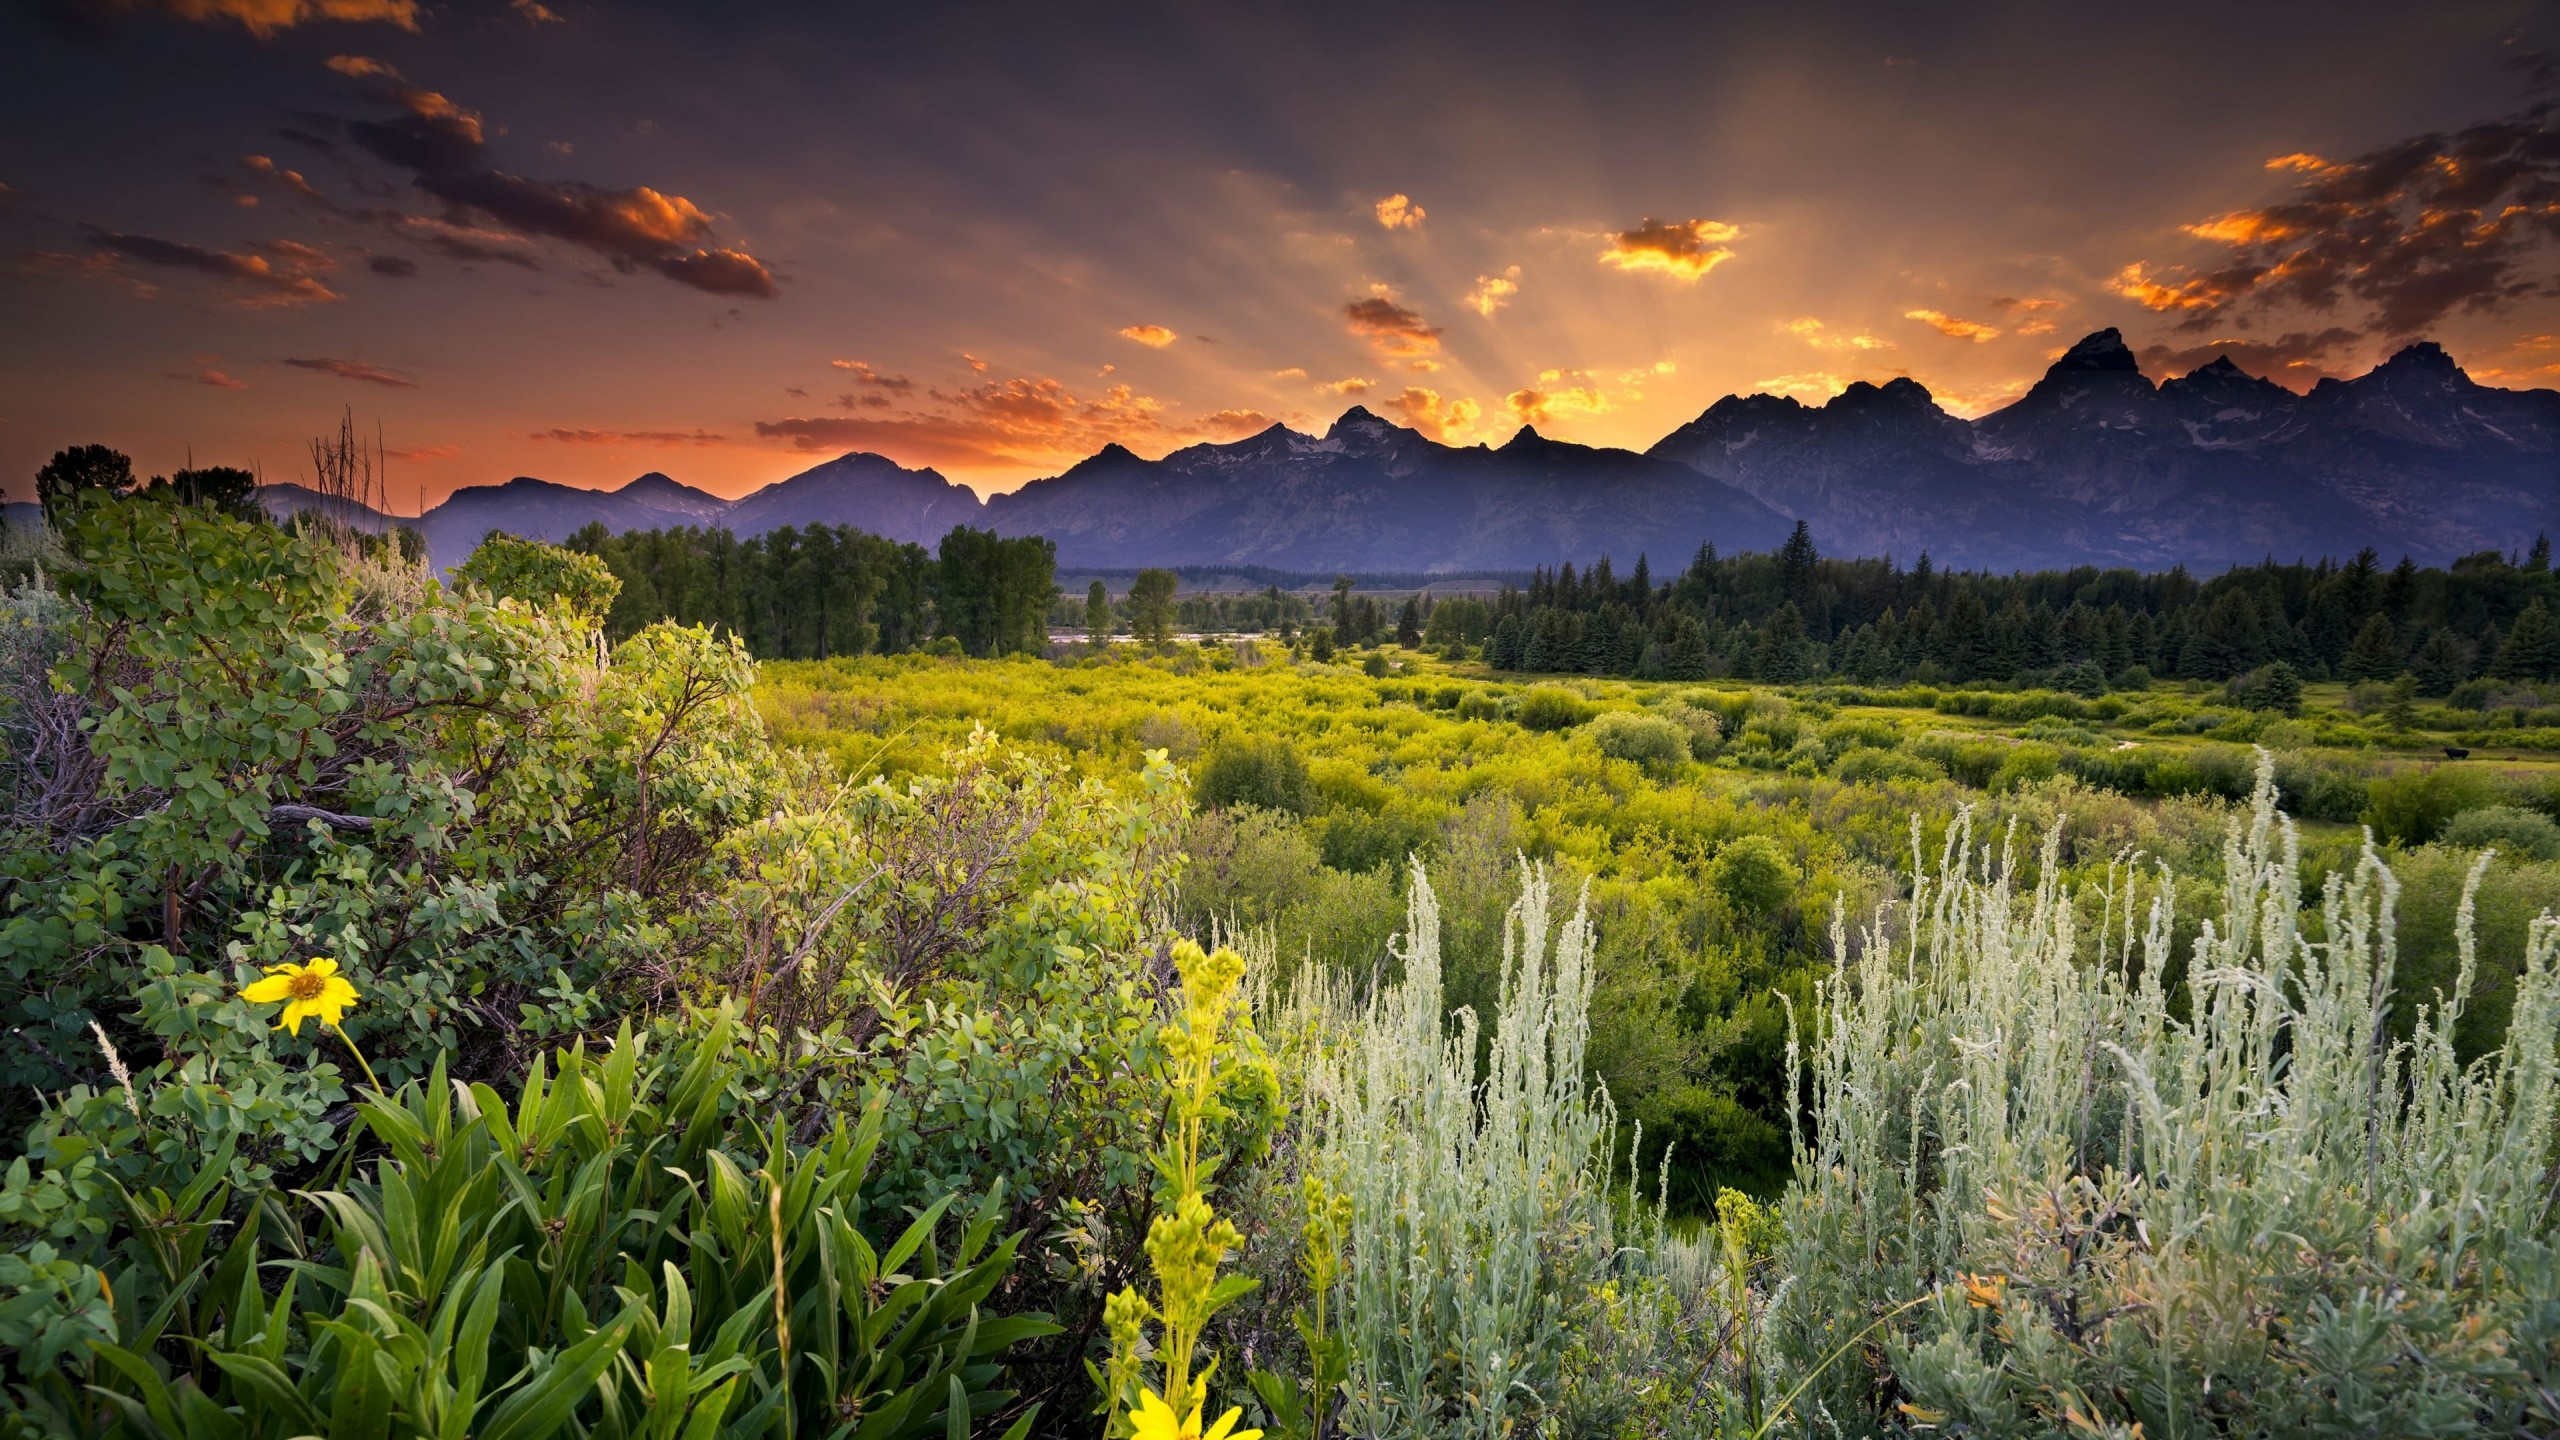 Sunset in Grand Teton National Park Wallpaper for Desktop 2560x1440